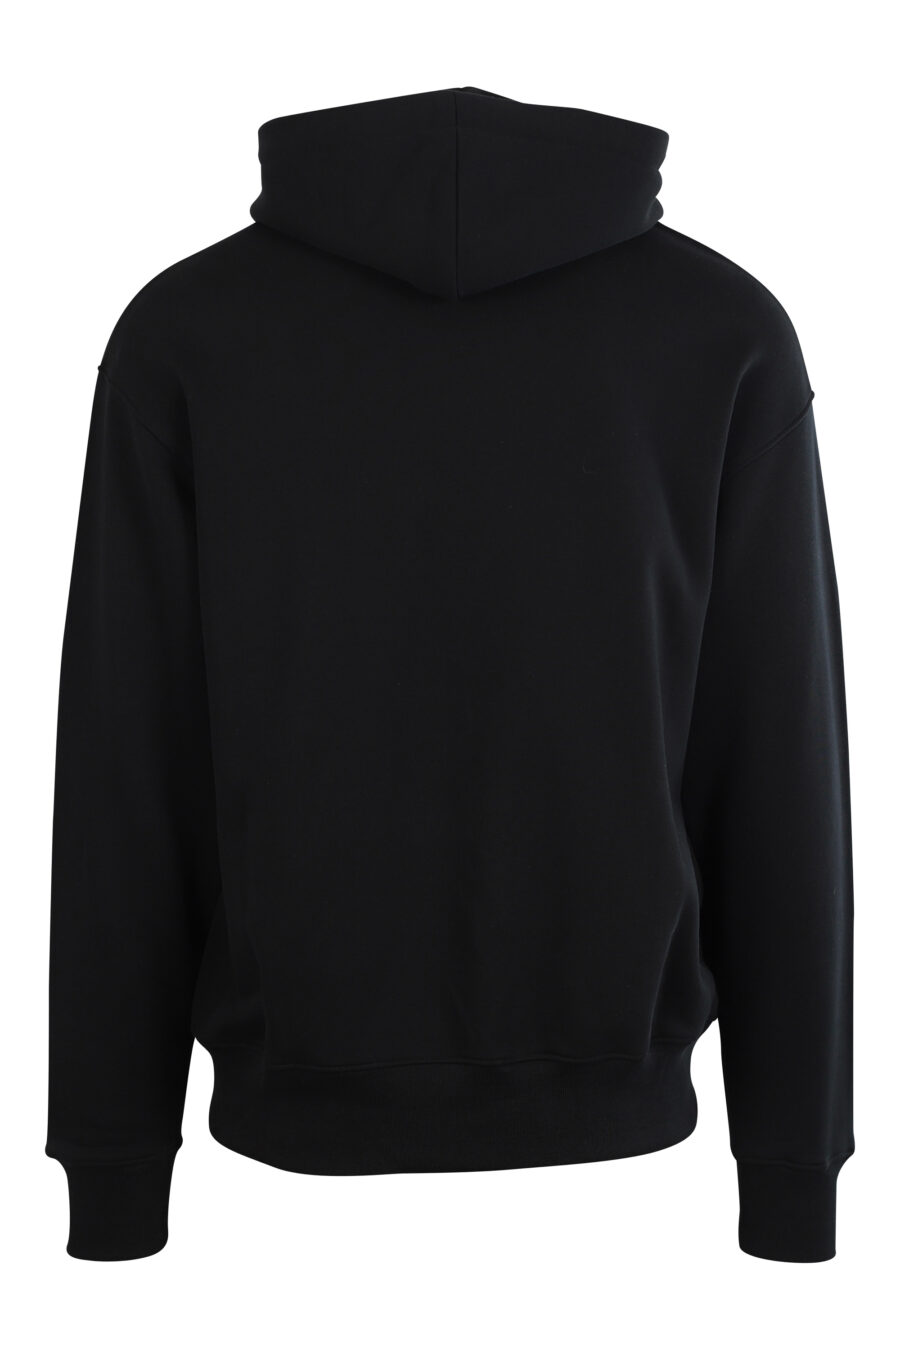 Schwarzes Kapuzensweatshirt mit schwarzem und lilafarbenem Gesichtsdruck - 889316192889 2